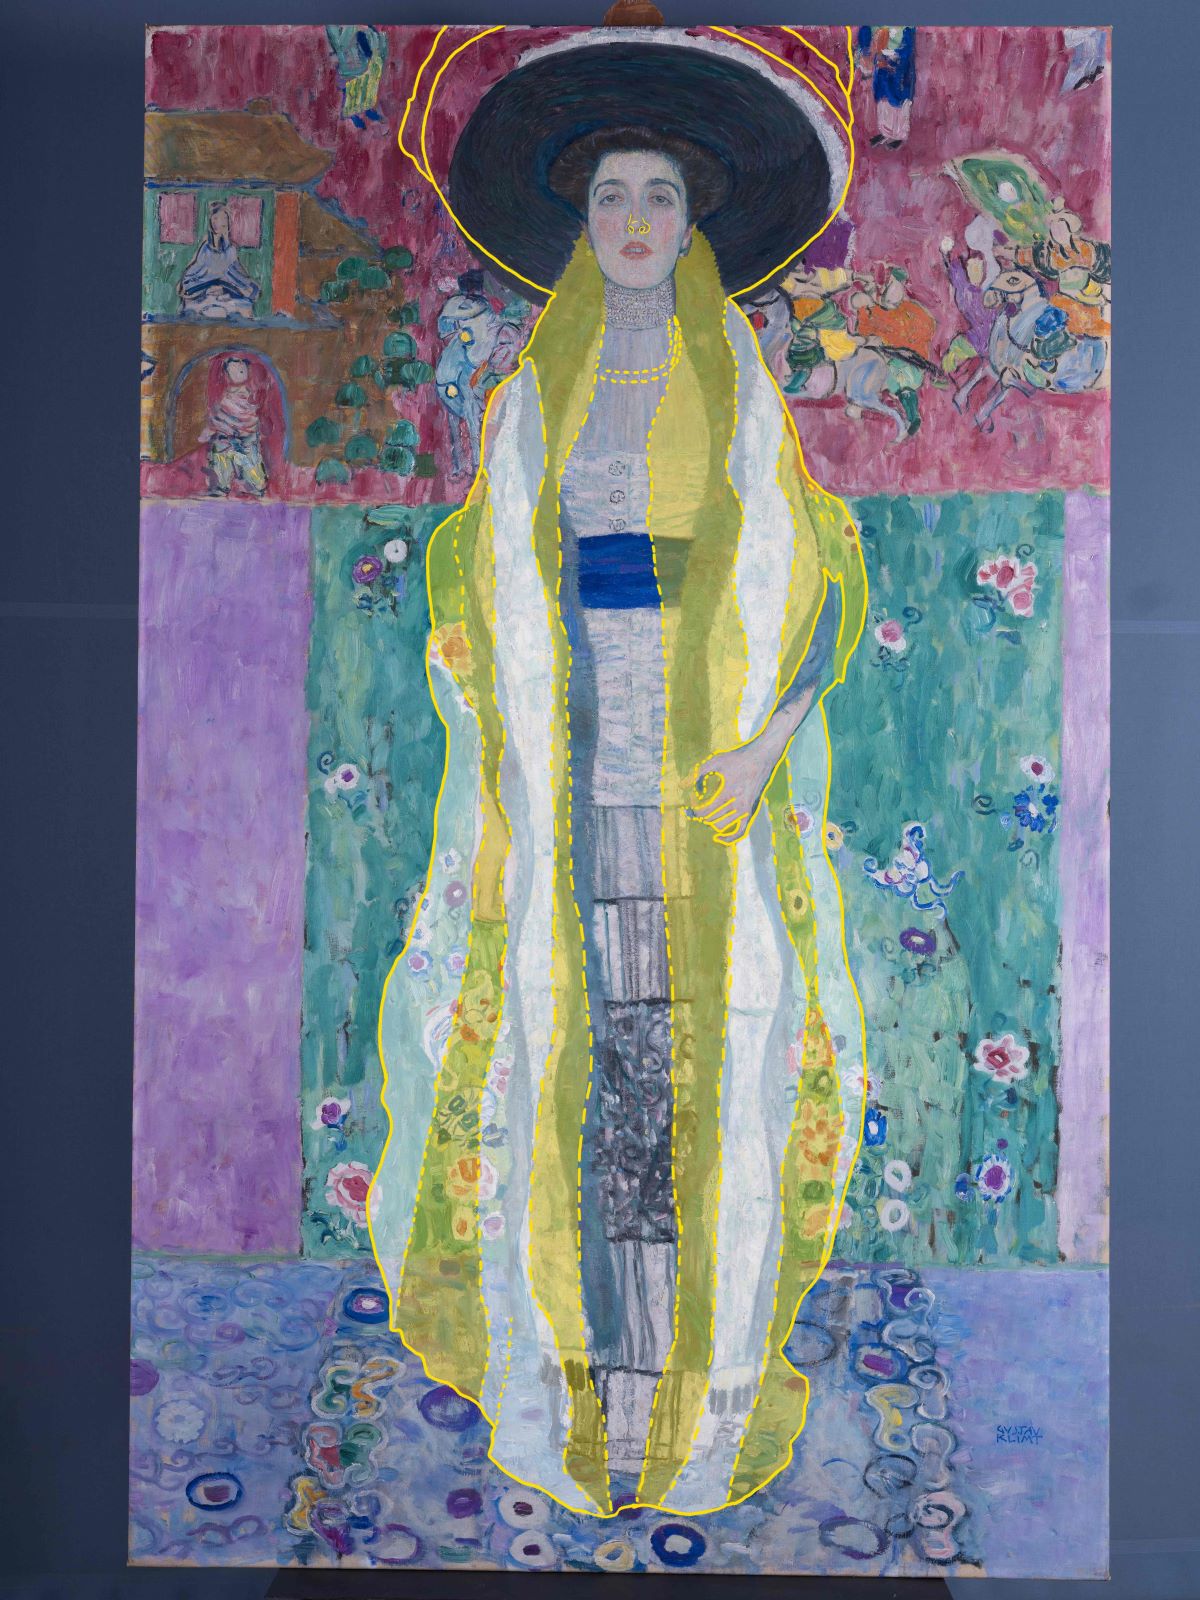 Gustav Klimt, Adele Bloch-Bauer II, Adele Bloch Bauer, Klimt Adele Bloch Bauer, Frau von Ferdinand Bloch-Bauer, Oberes Belvedere